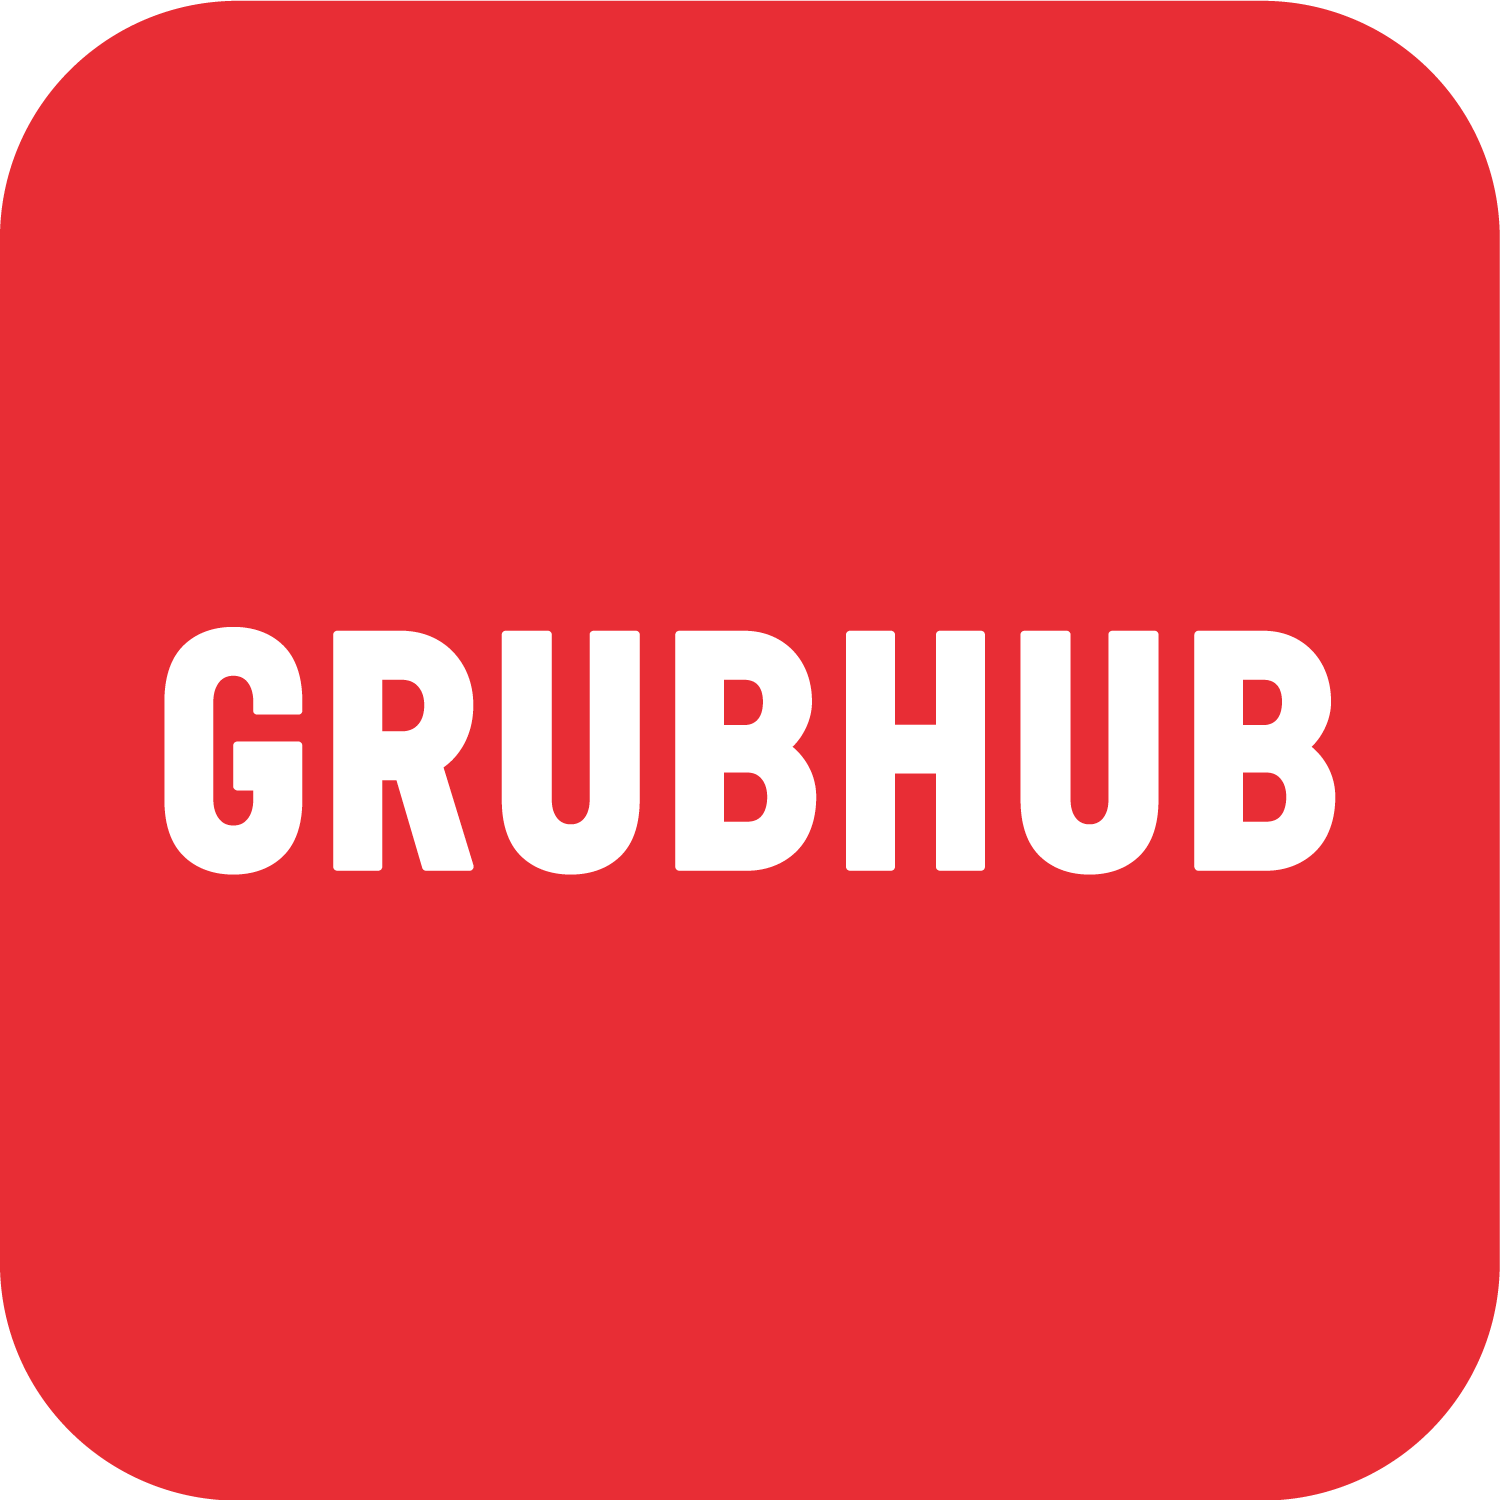 grubhub old logo